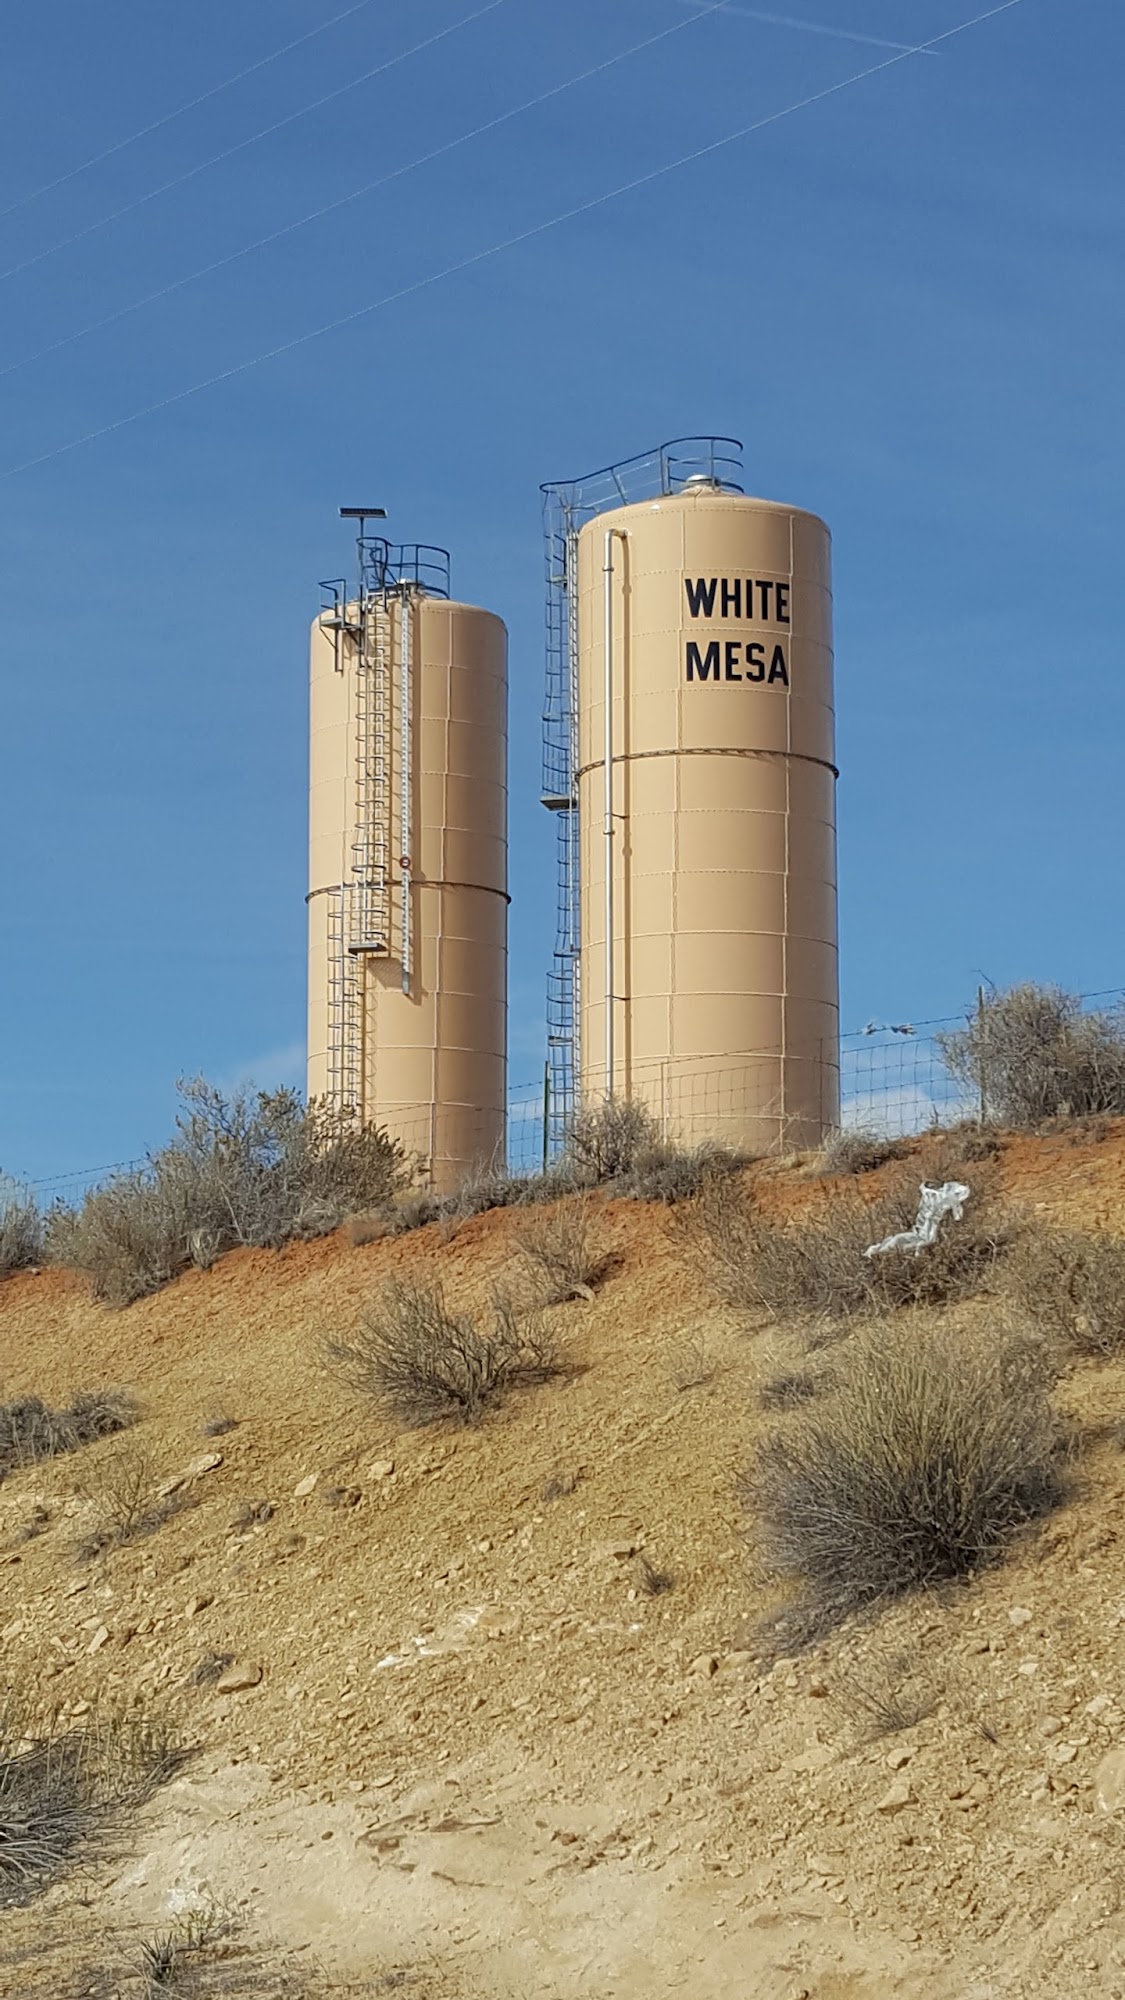 White Mesa Travel Center